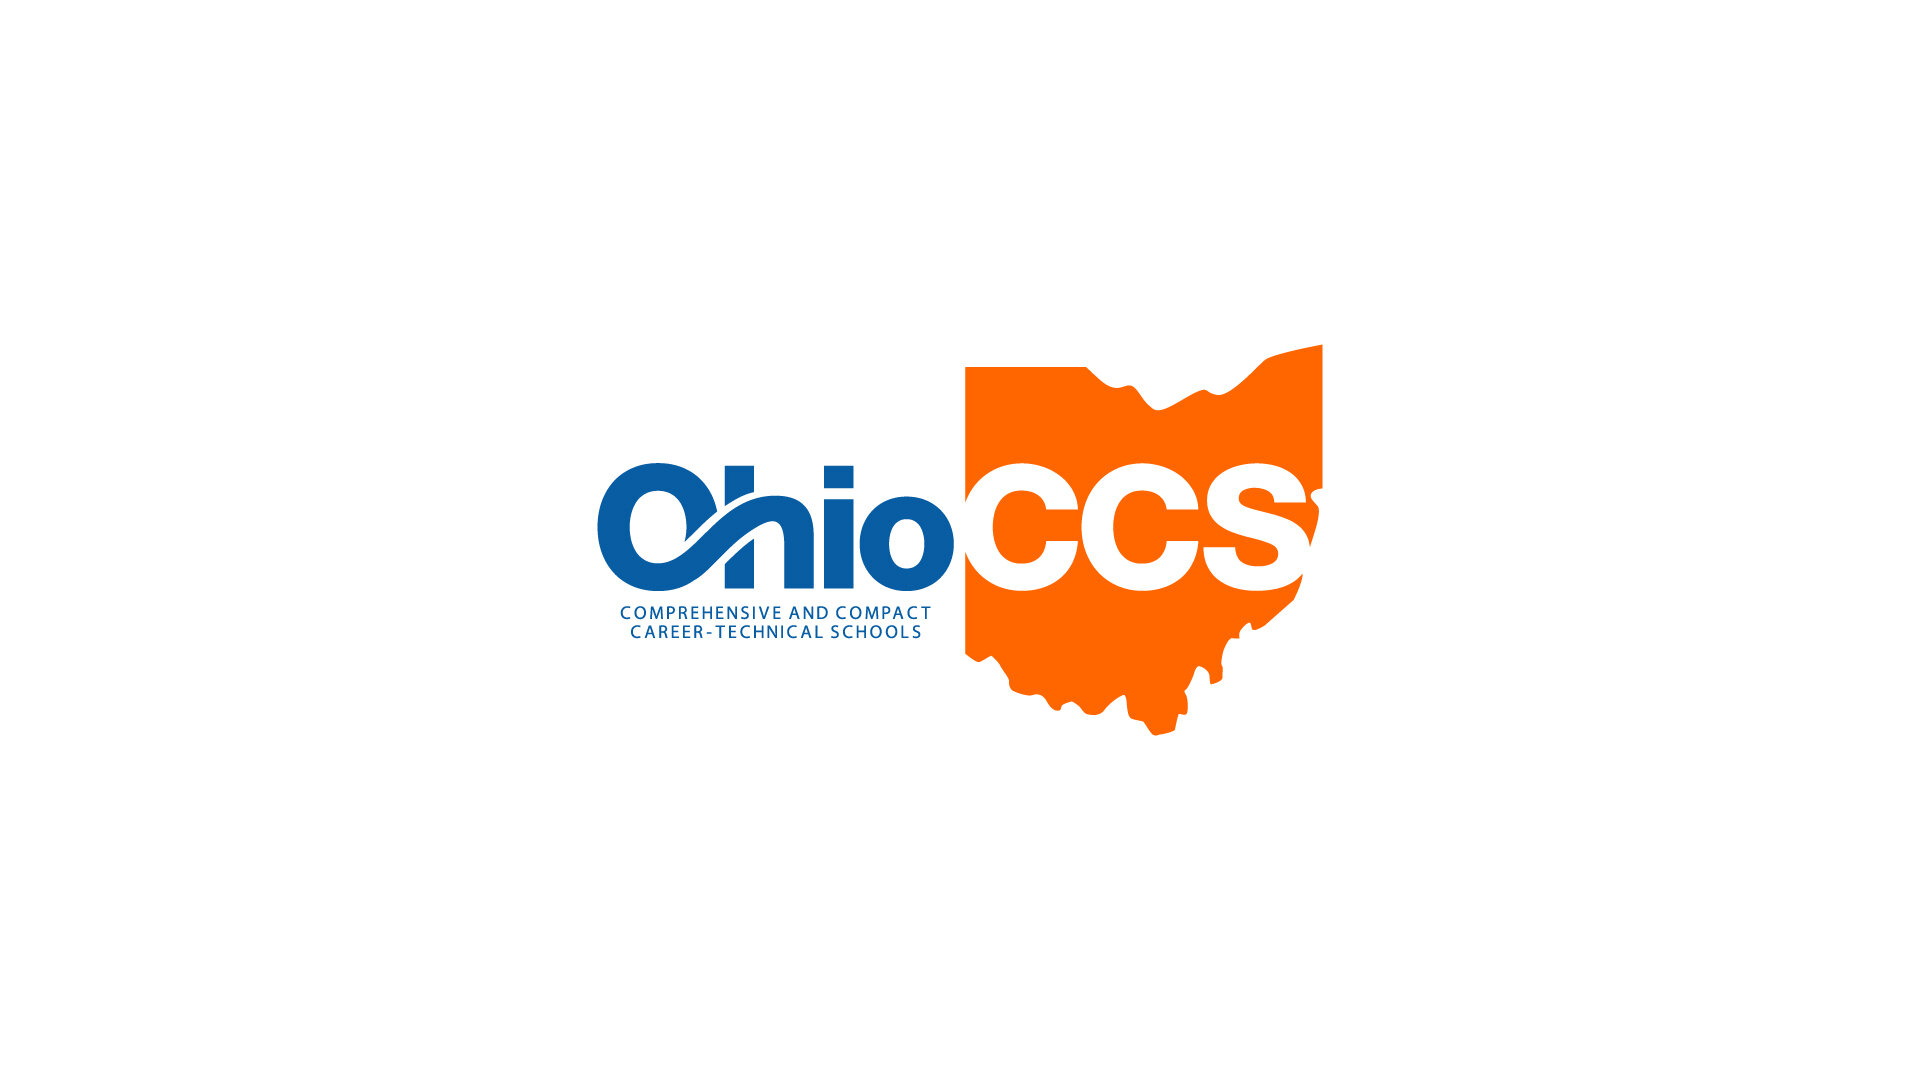 Ohio CCS